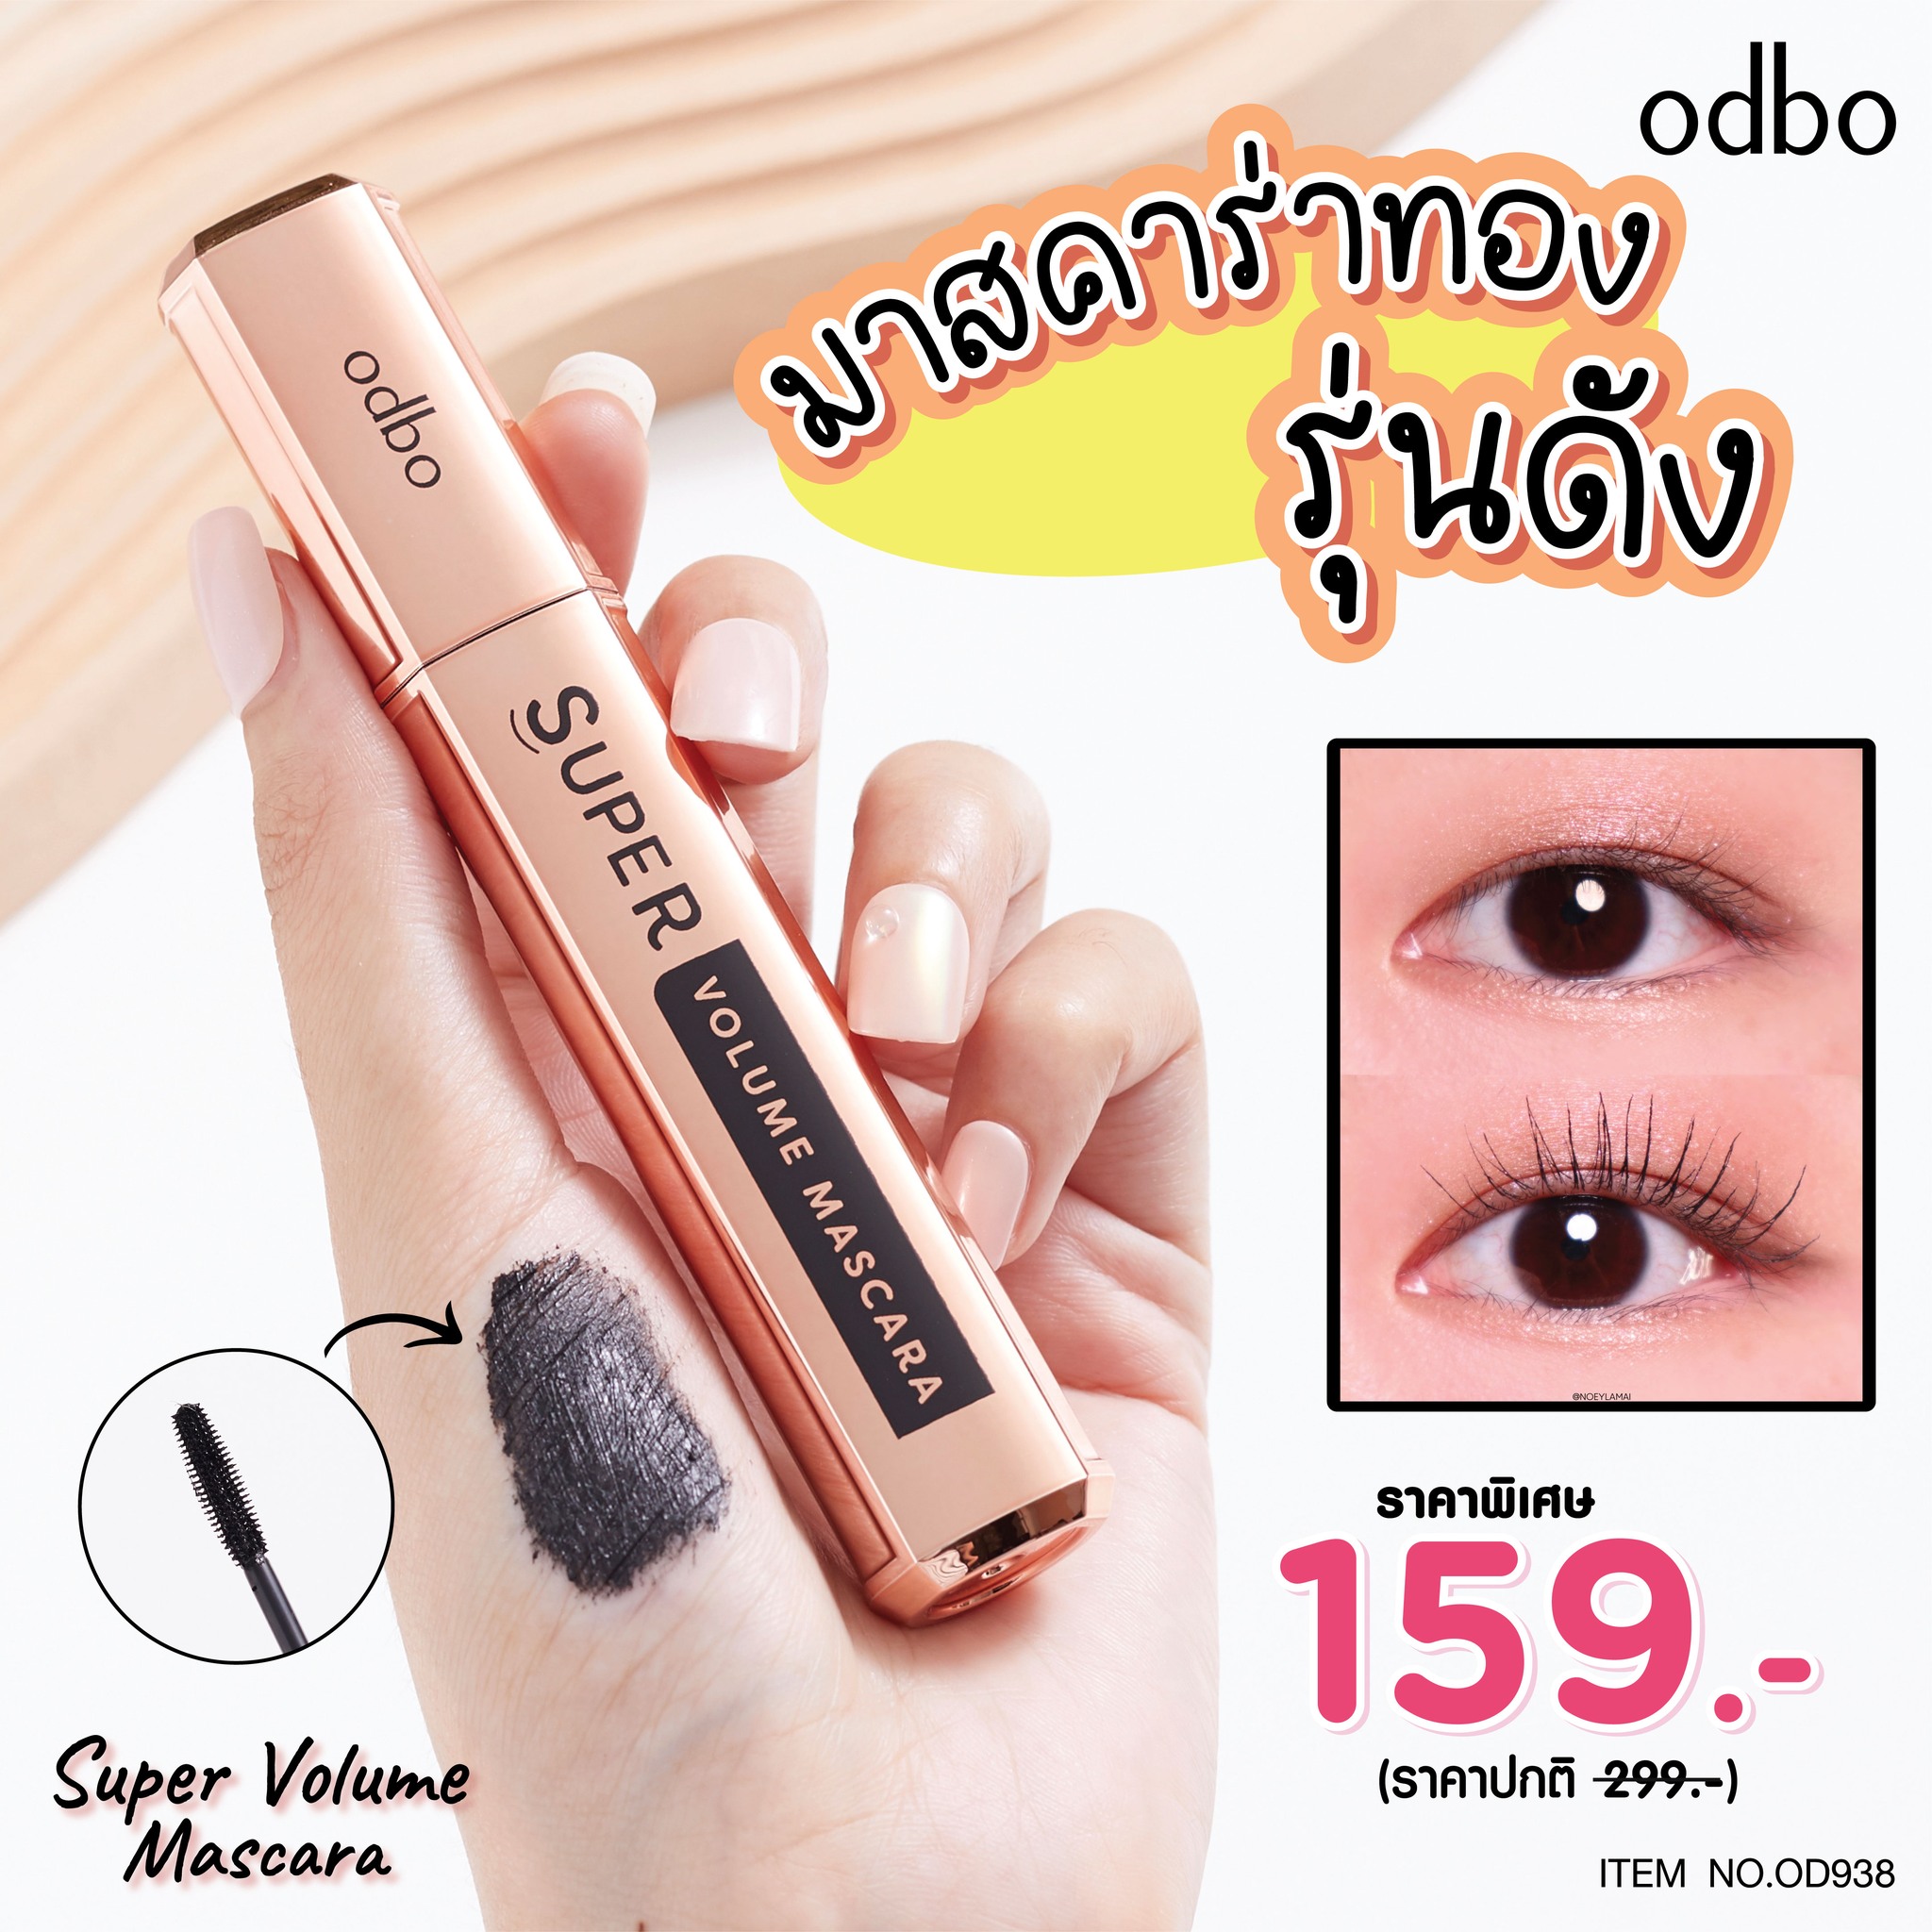 [Odbo] Mascara Golden Super Volume Mascara OD938 Thái Lan